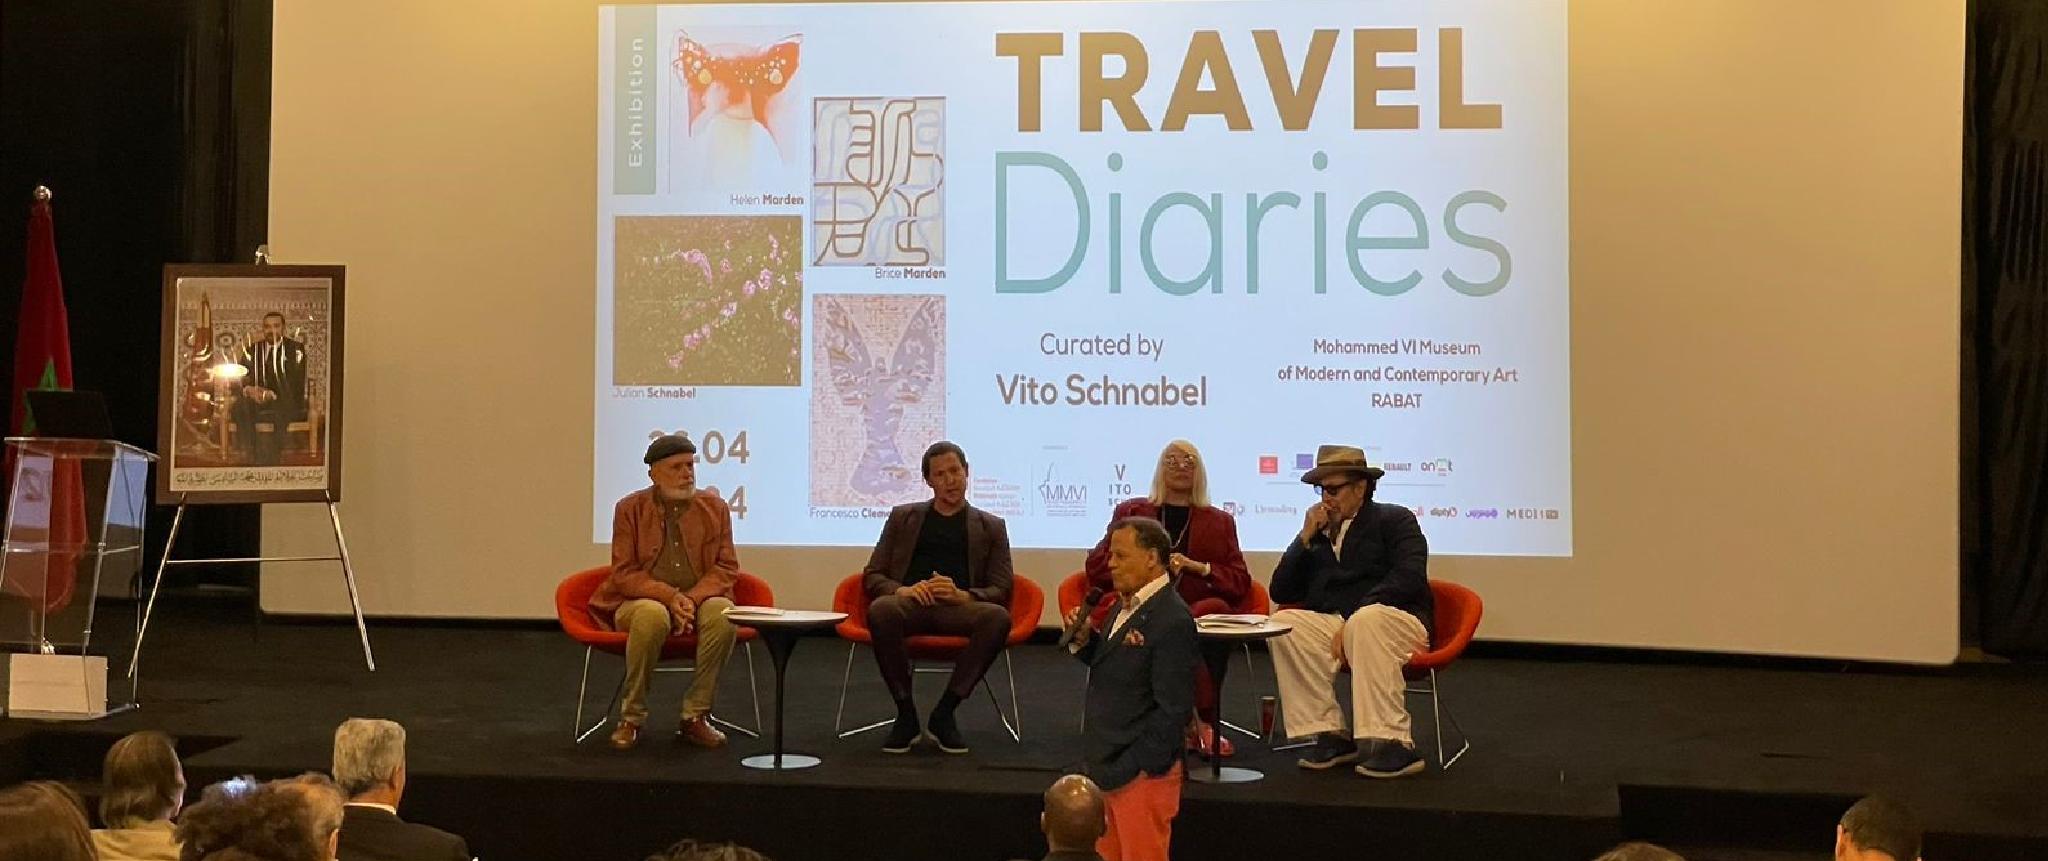 L'exposition « Travel Diaries » au Musée Mohammed VI d’art moderne et contemporain